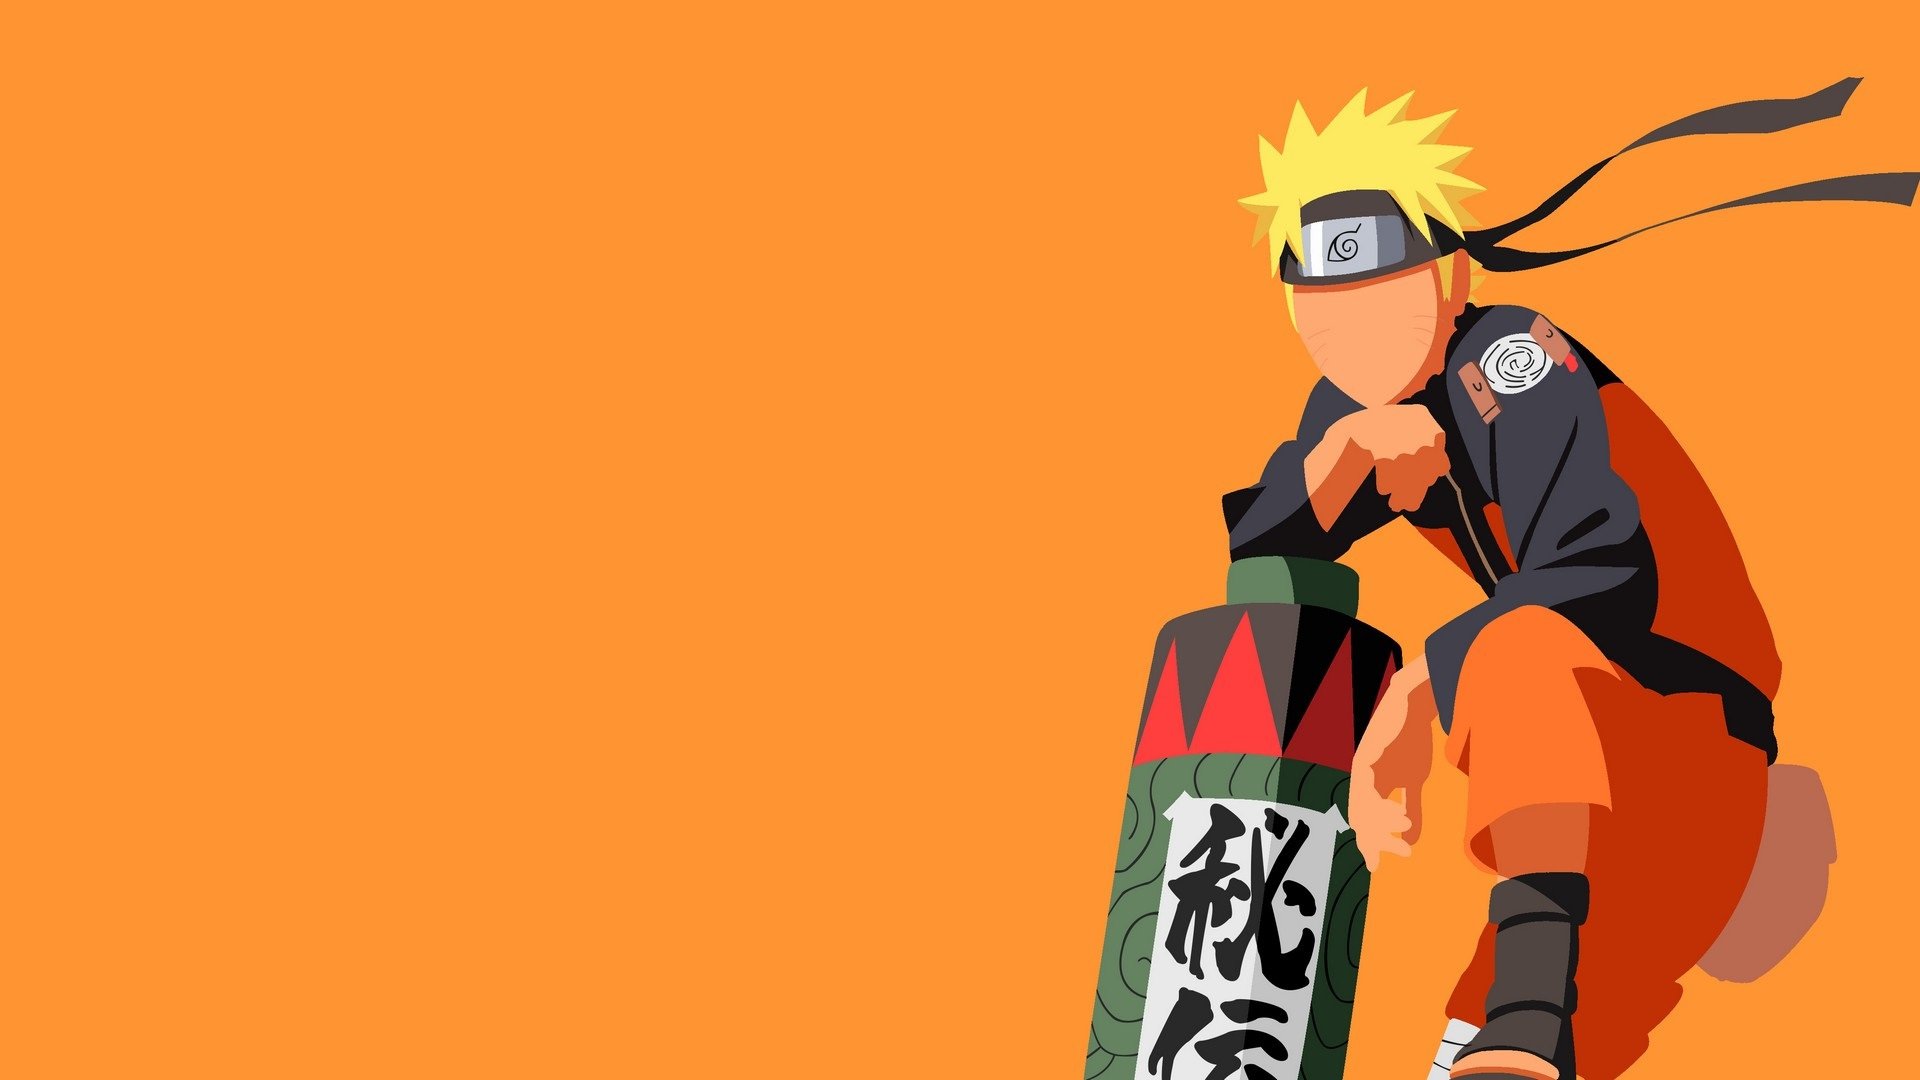 Naruto Art